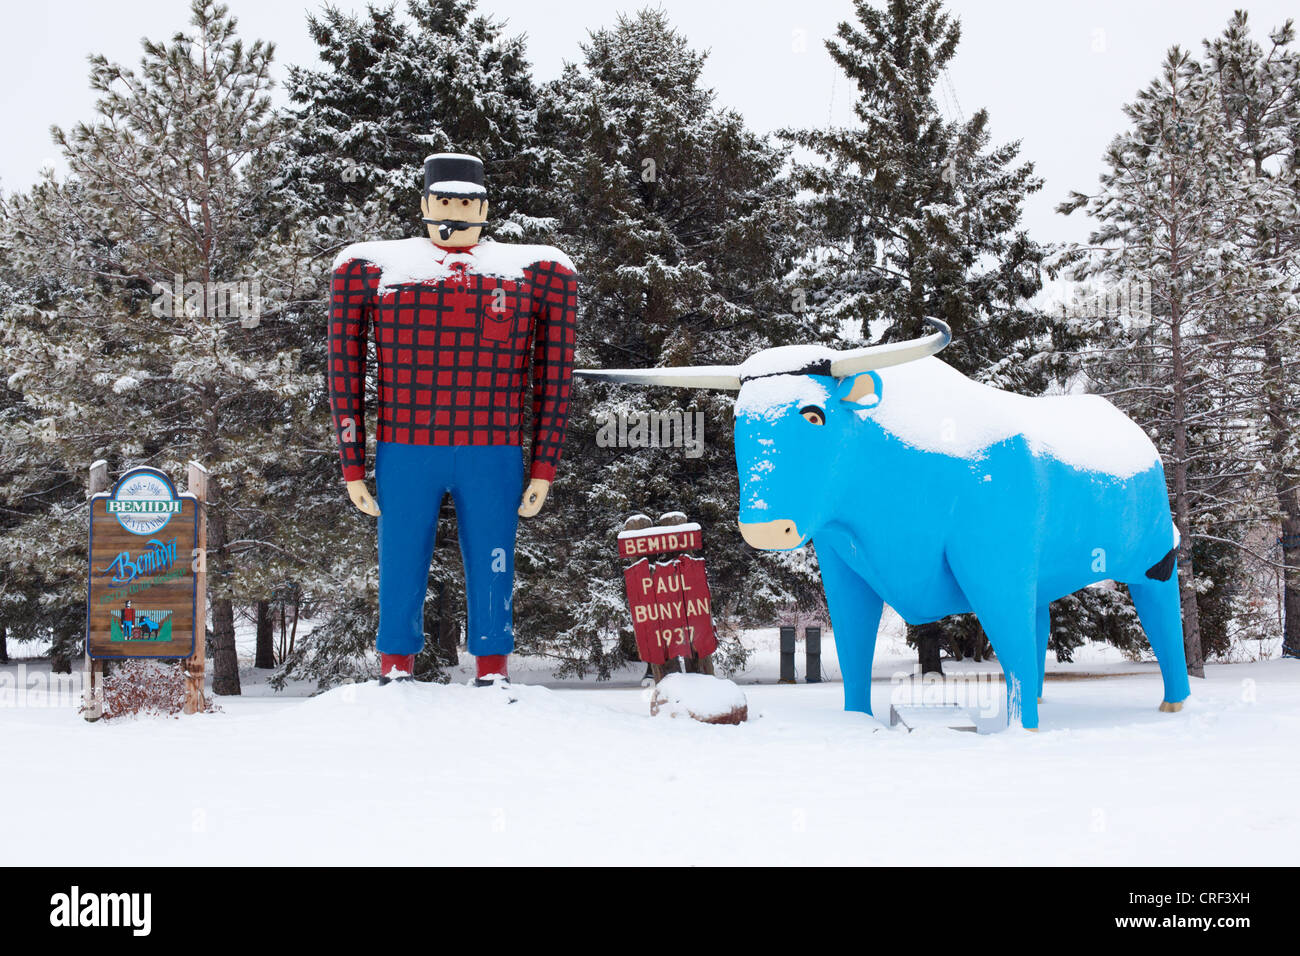 Paul Bunyan bûcheron et Babe la sculpture Blue Ox en hiver - Bemidji, au Minnesota. Banque D'Images